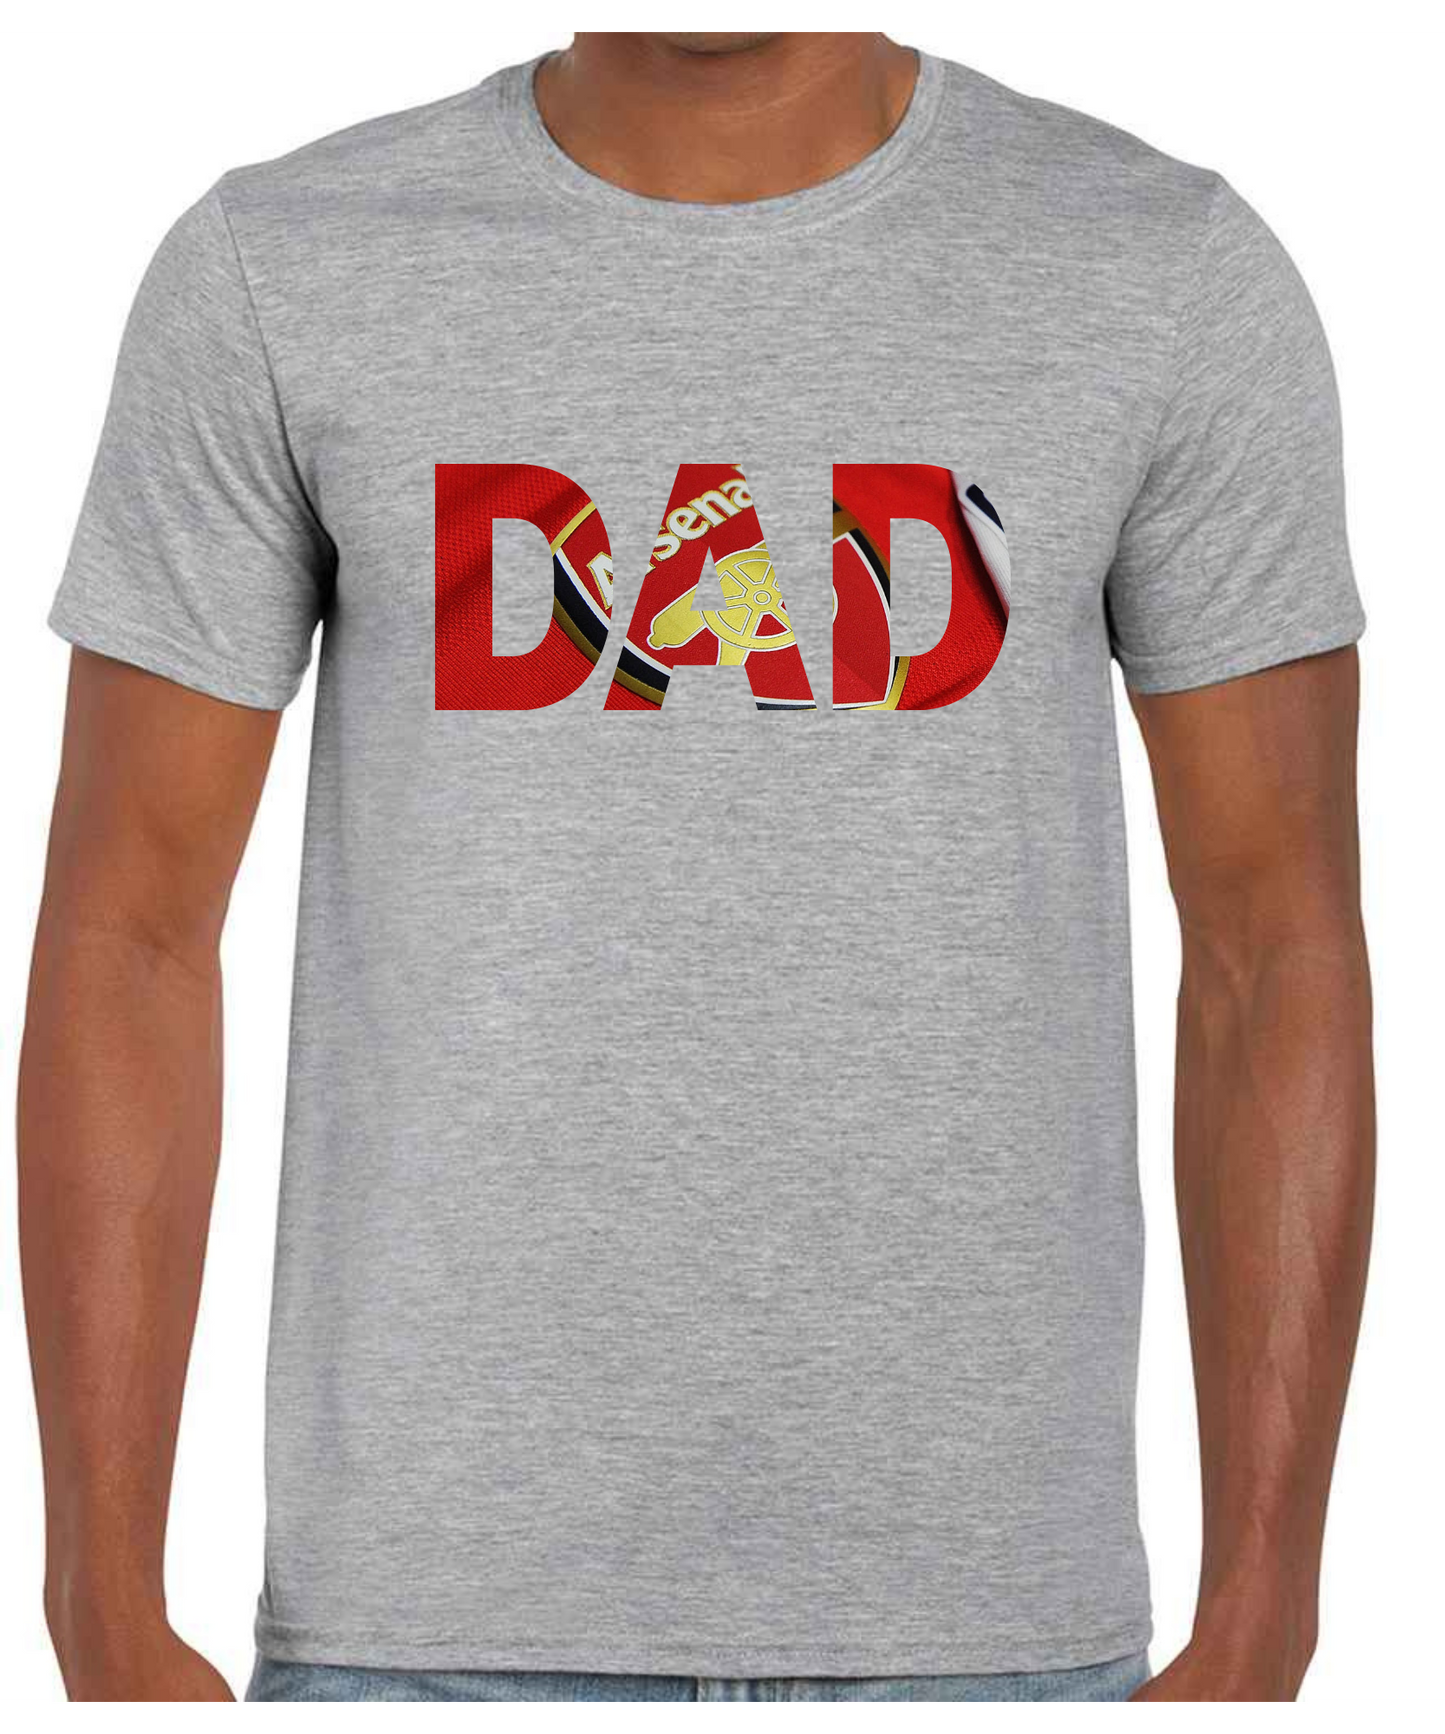 Arsenal - Dad T Shirt (White/Black/Grey)